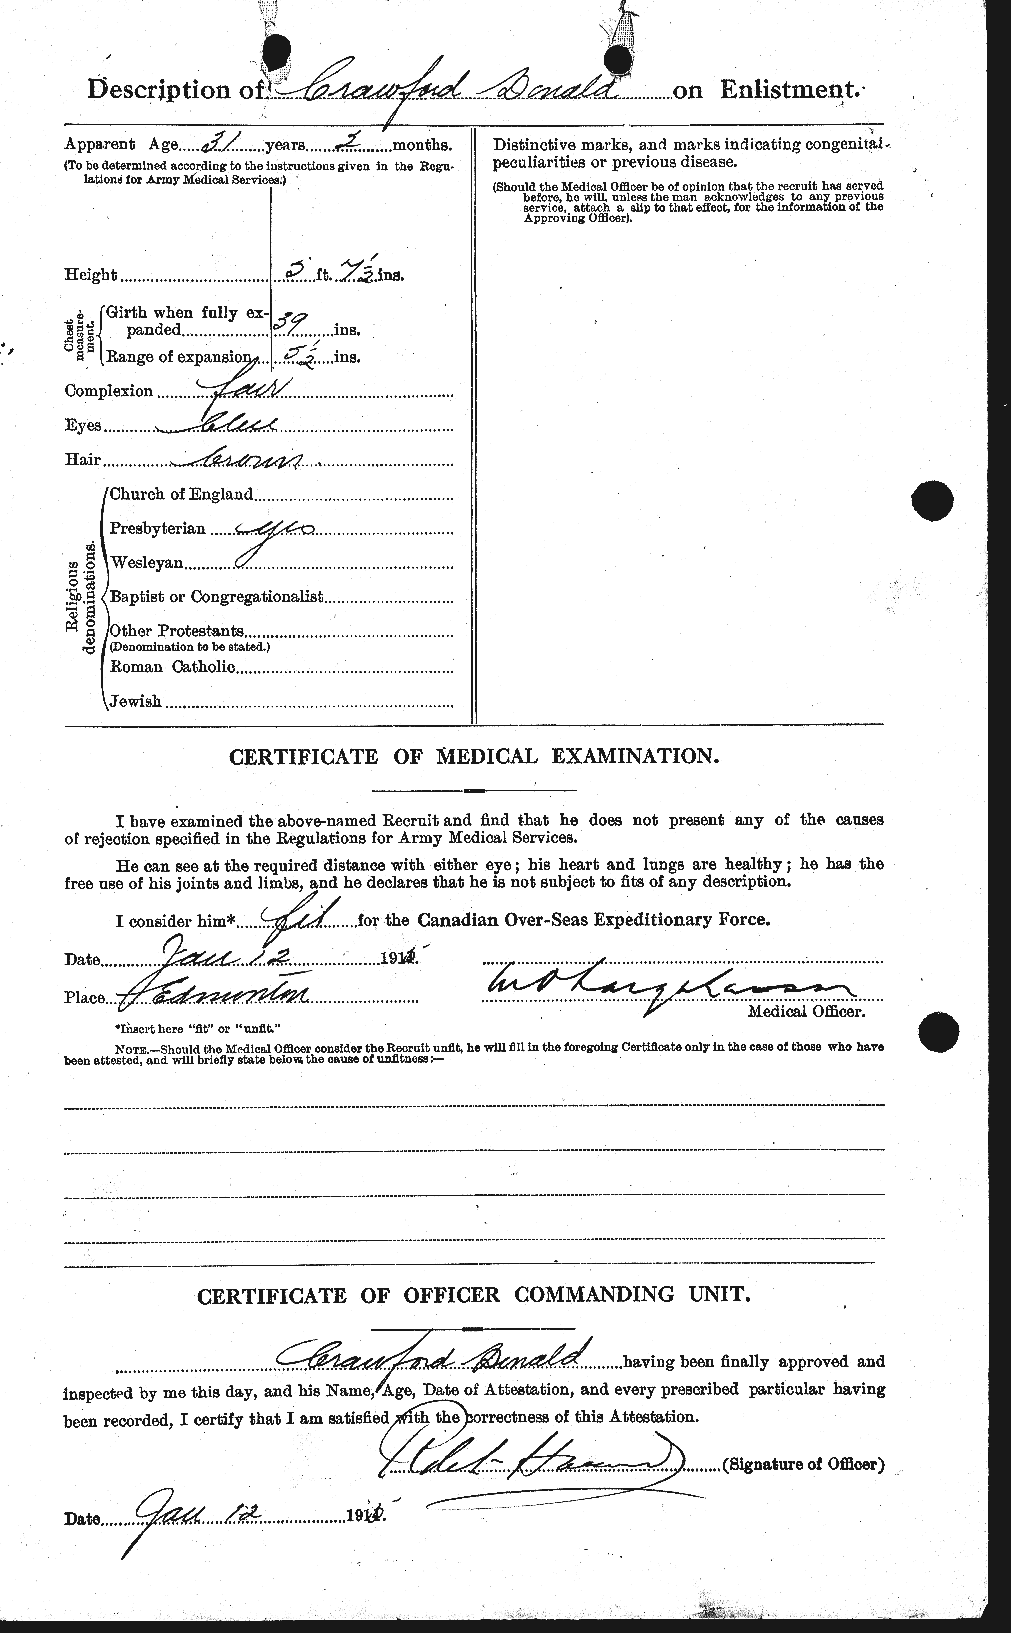 Dossiers du Personnel de la Première Guerre mondiale - CEC 060812b